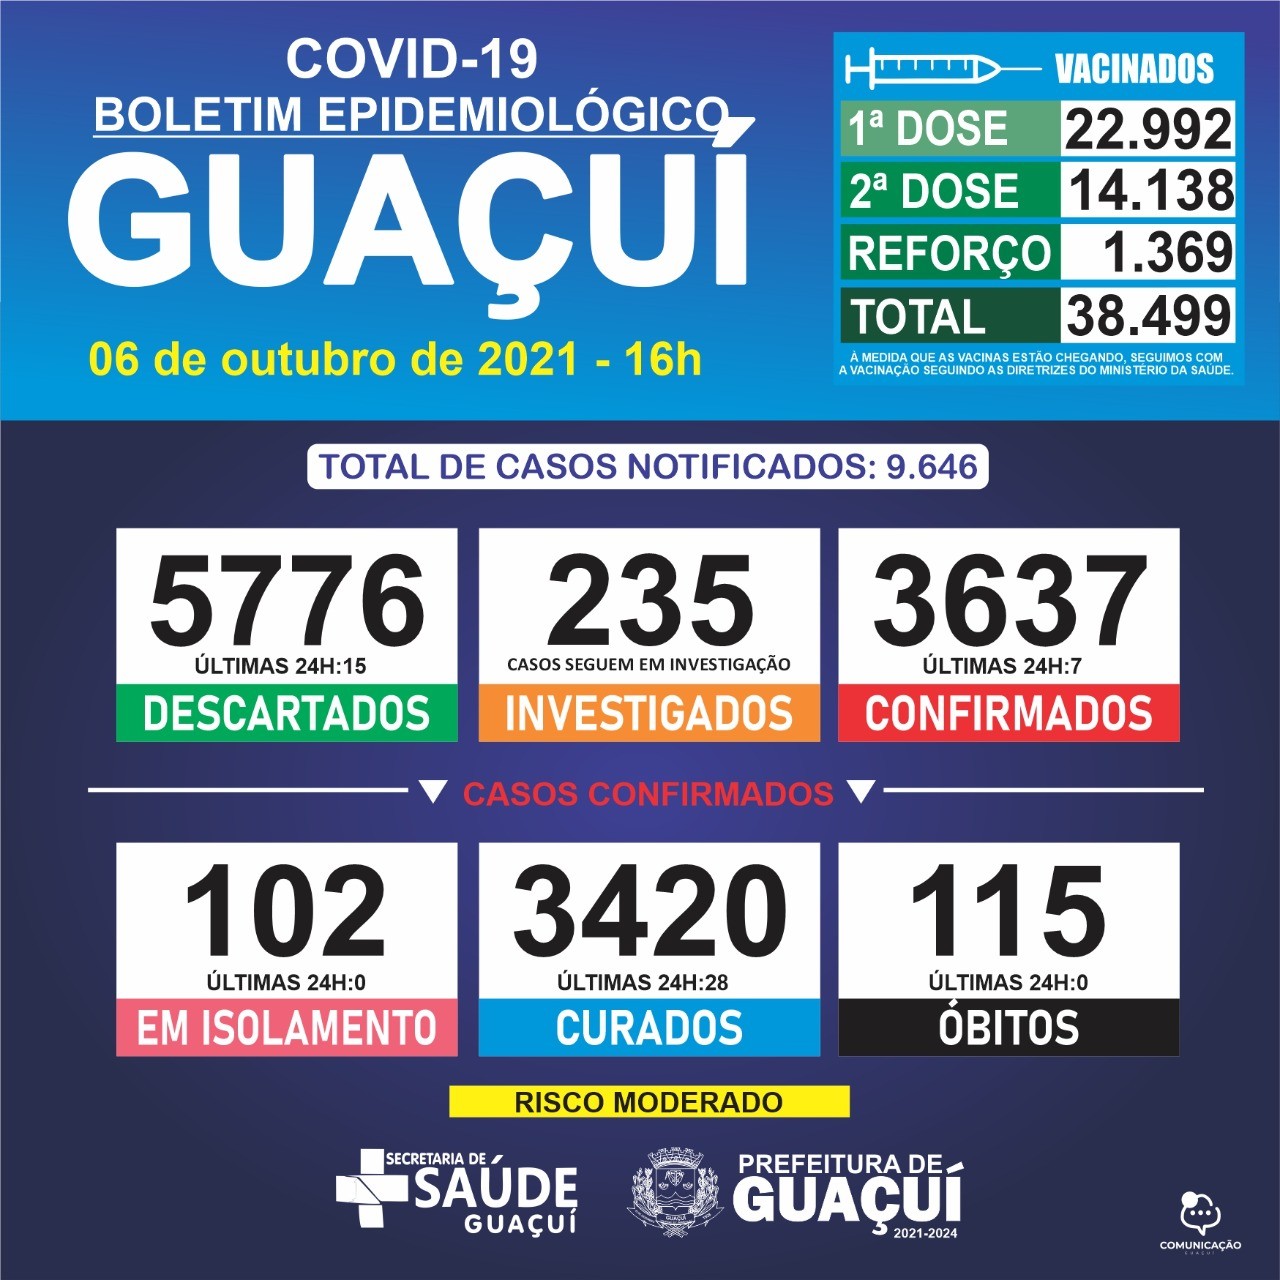 Boletim Epidemiológico 06/10/2021: Guaçuí registra 7 casos confirmados e 28 curados nas últimas 24 horas